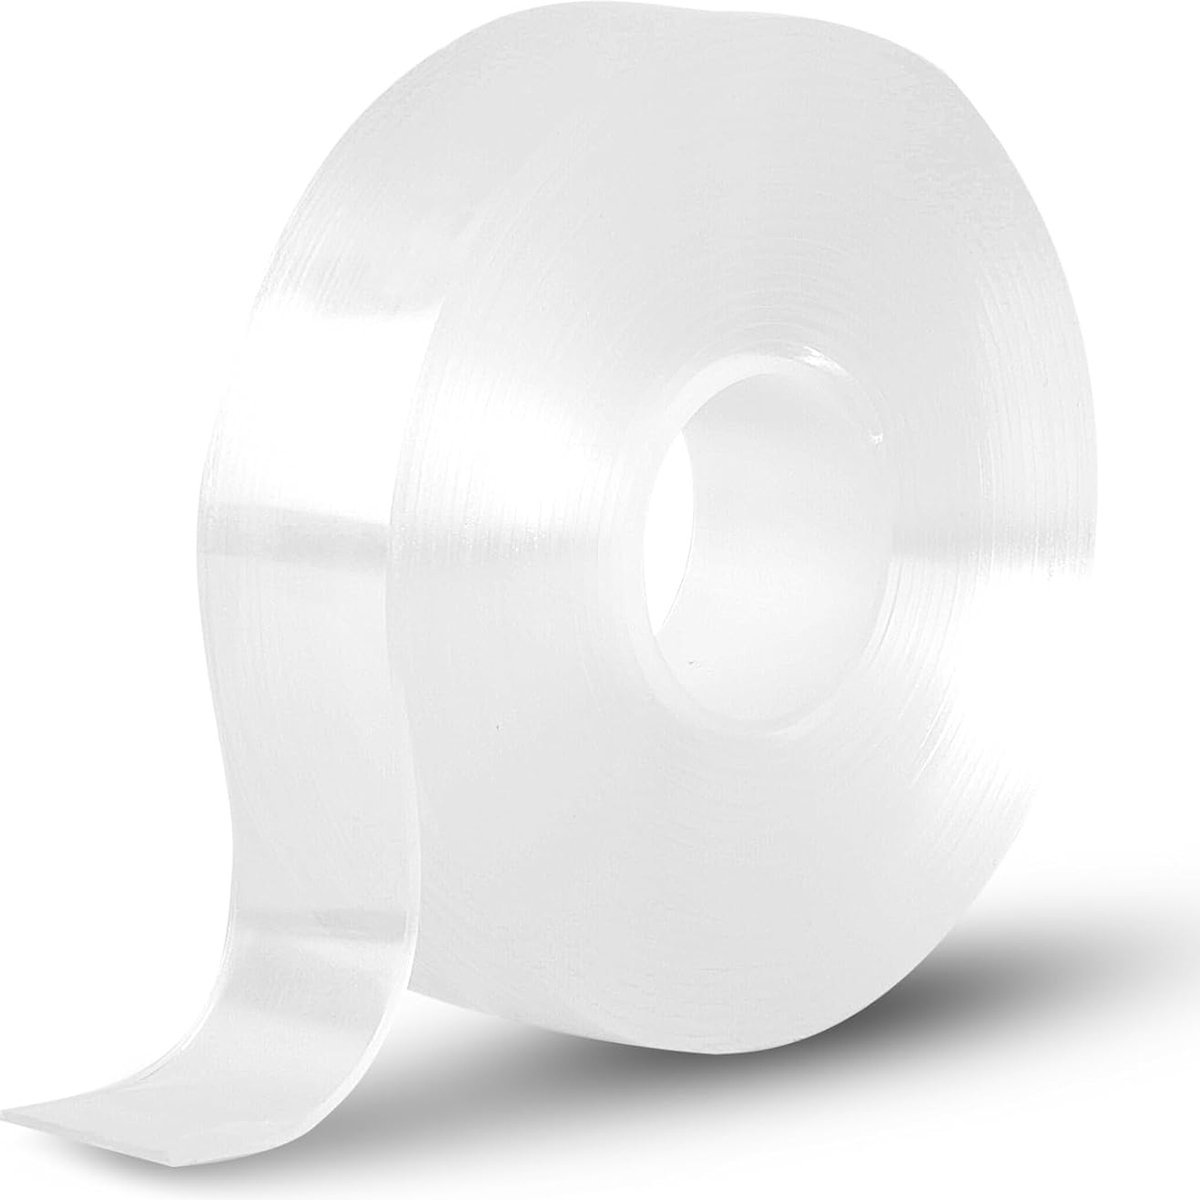 (3 stuks )Dubbelzijdig plakband, transparant, 3 m nano-dubbelzijdige tape, 3 cm breed en 2 mm dik dubbelzijdig plakband voor tapijt, fotolijst, keuken, thuis, auto of outdoor